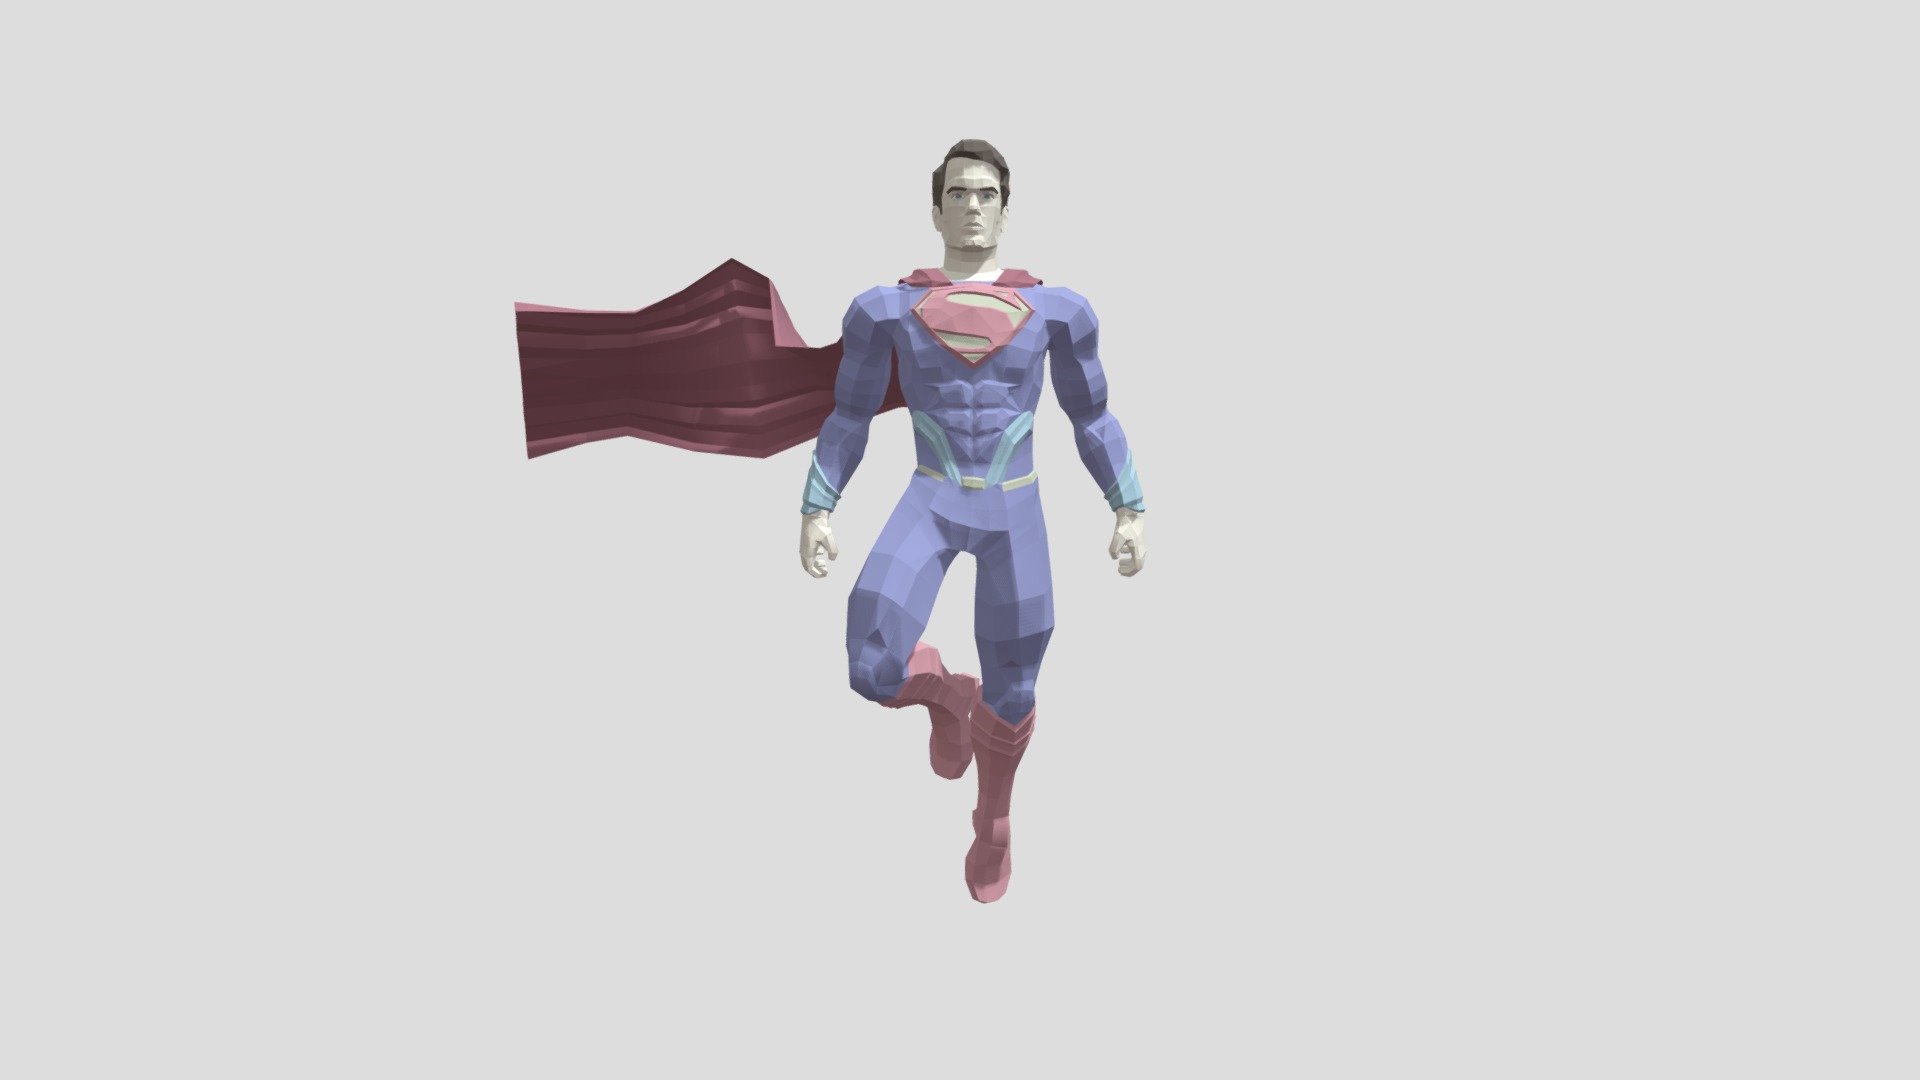 Free download Henry Cavill Superman Wallpaper Henry cavill